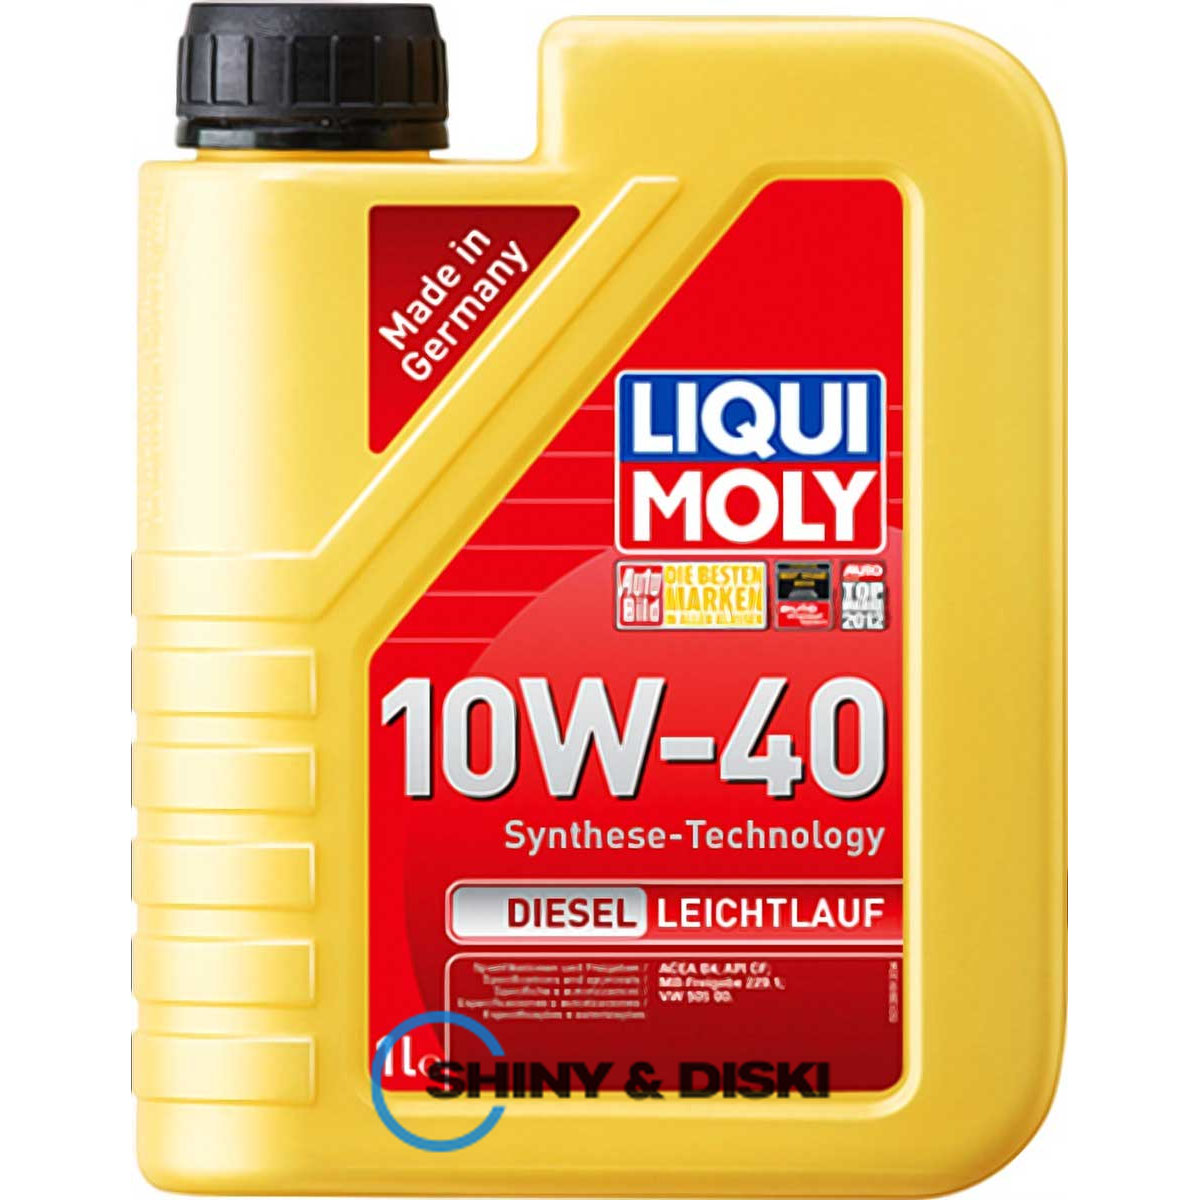 liqui moly diesel leichtlauf 10w-40 (1л)